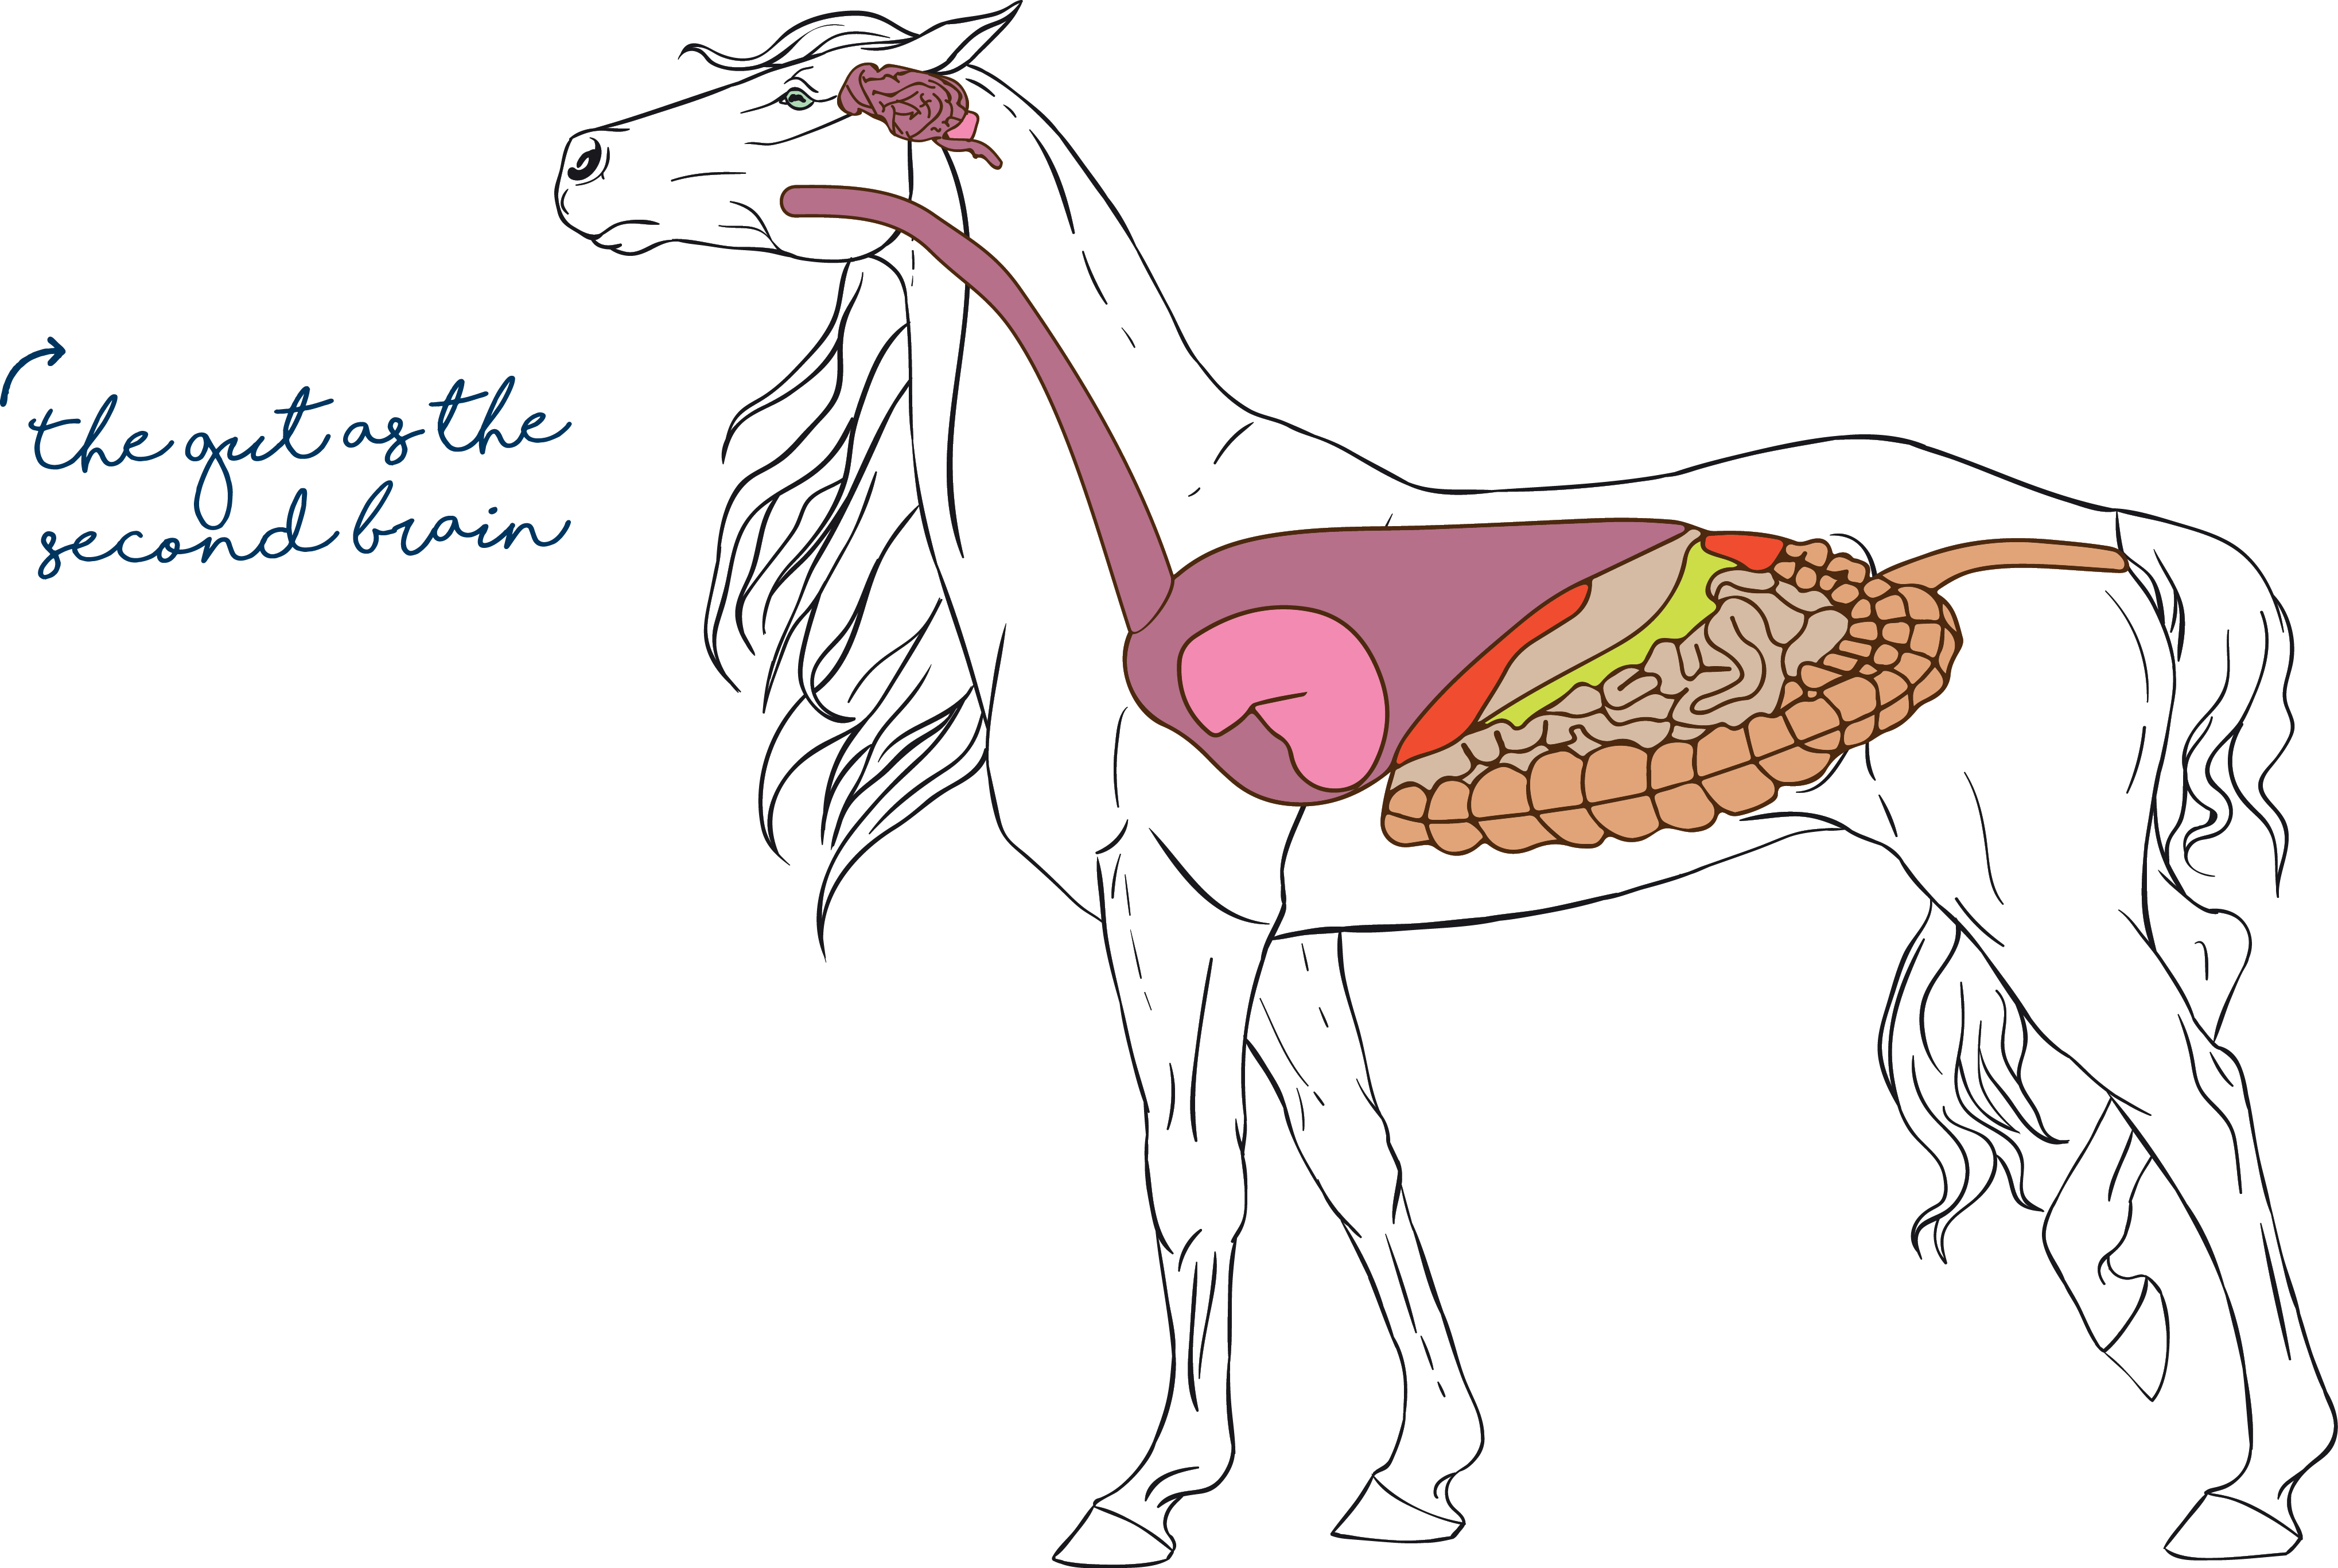 Equine gut withsecondbrain